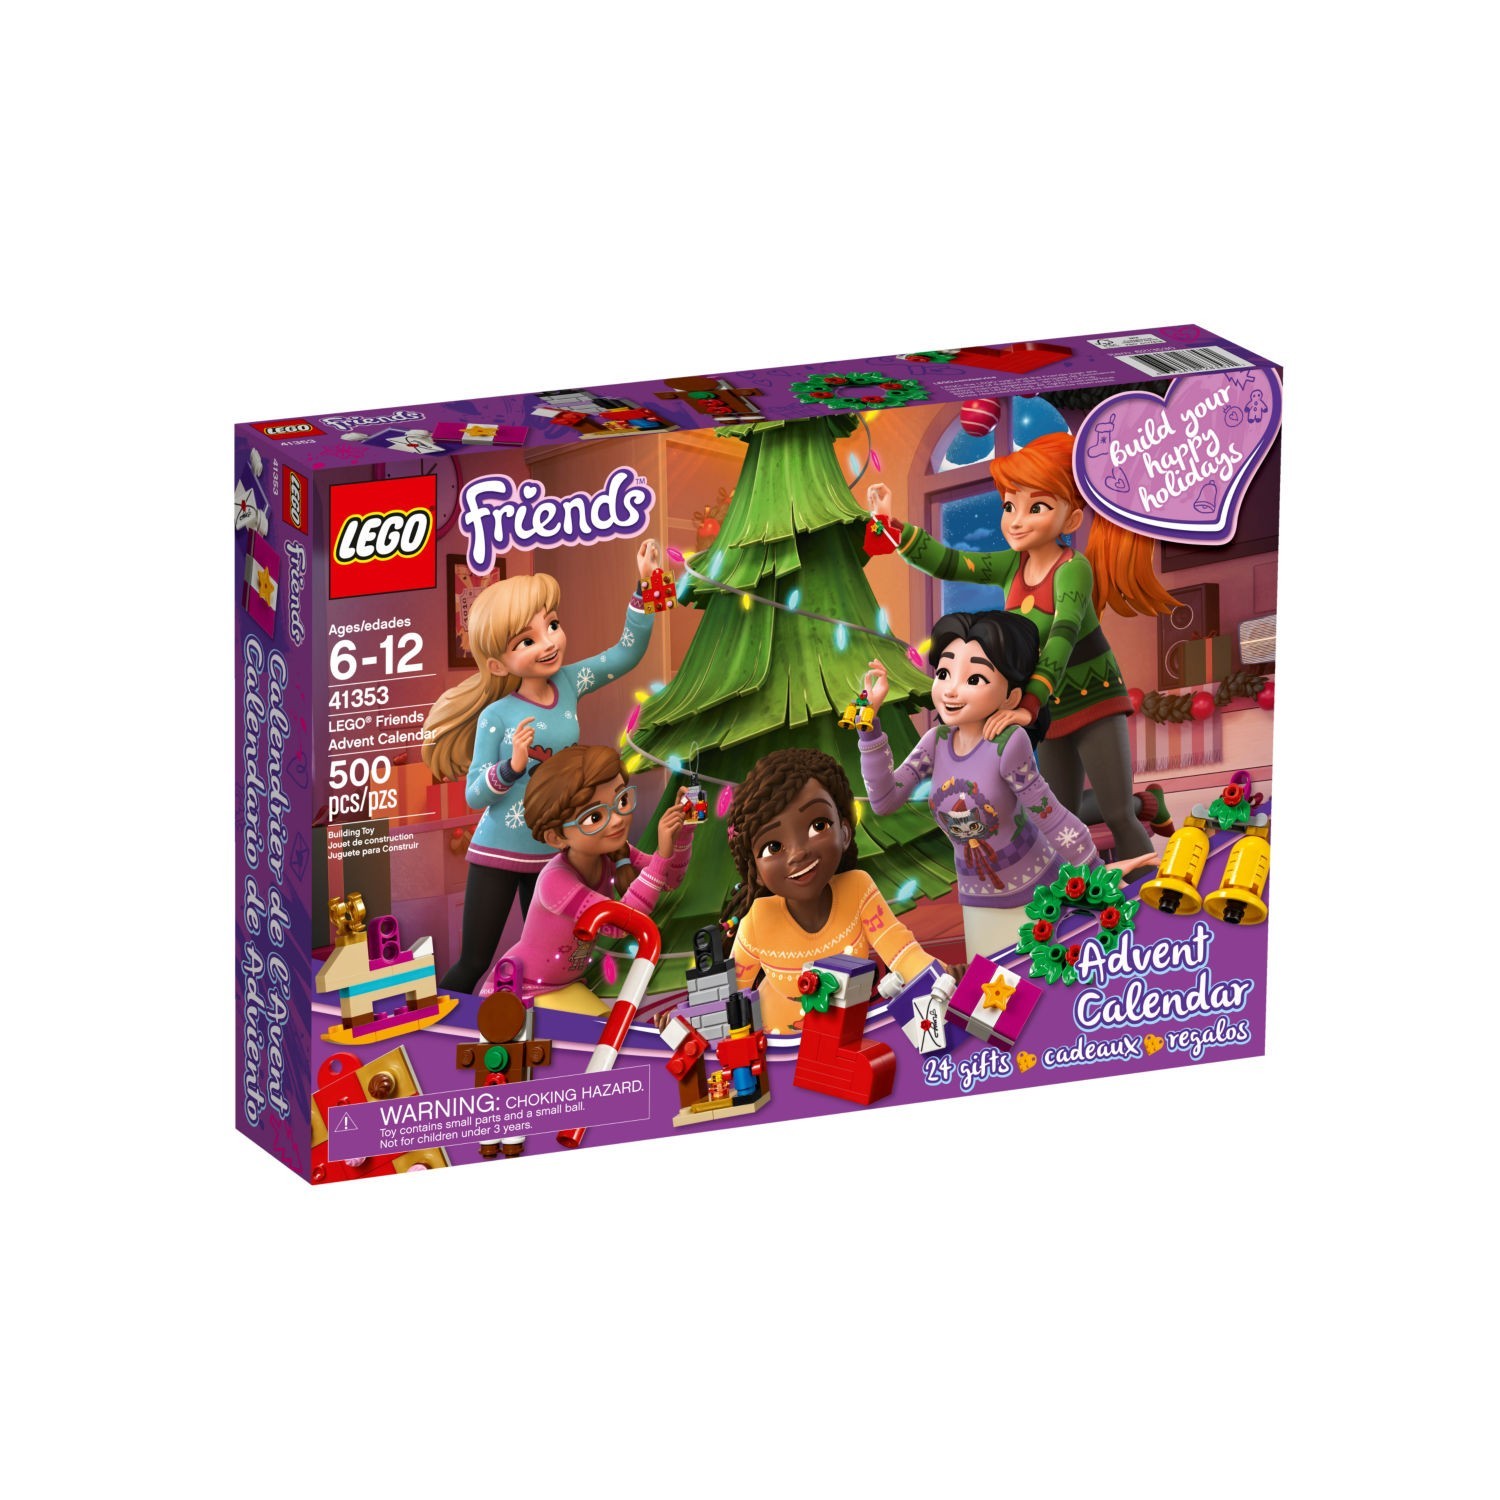 LEGO ® 41353 Friends Calendrier de l'avent 2018 24 Cadeaux de Noël Bijoux 